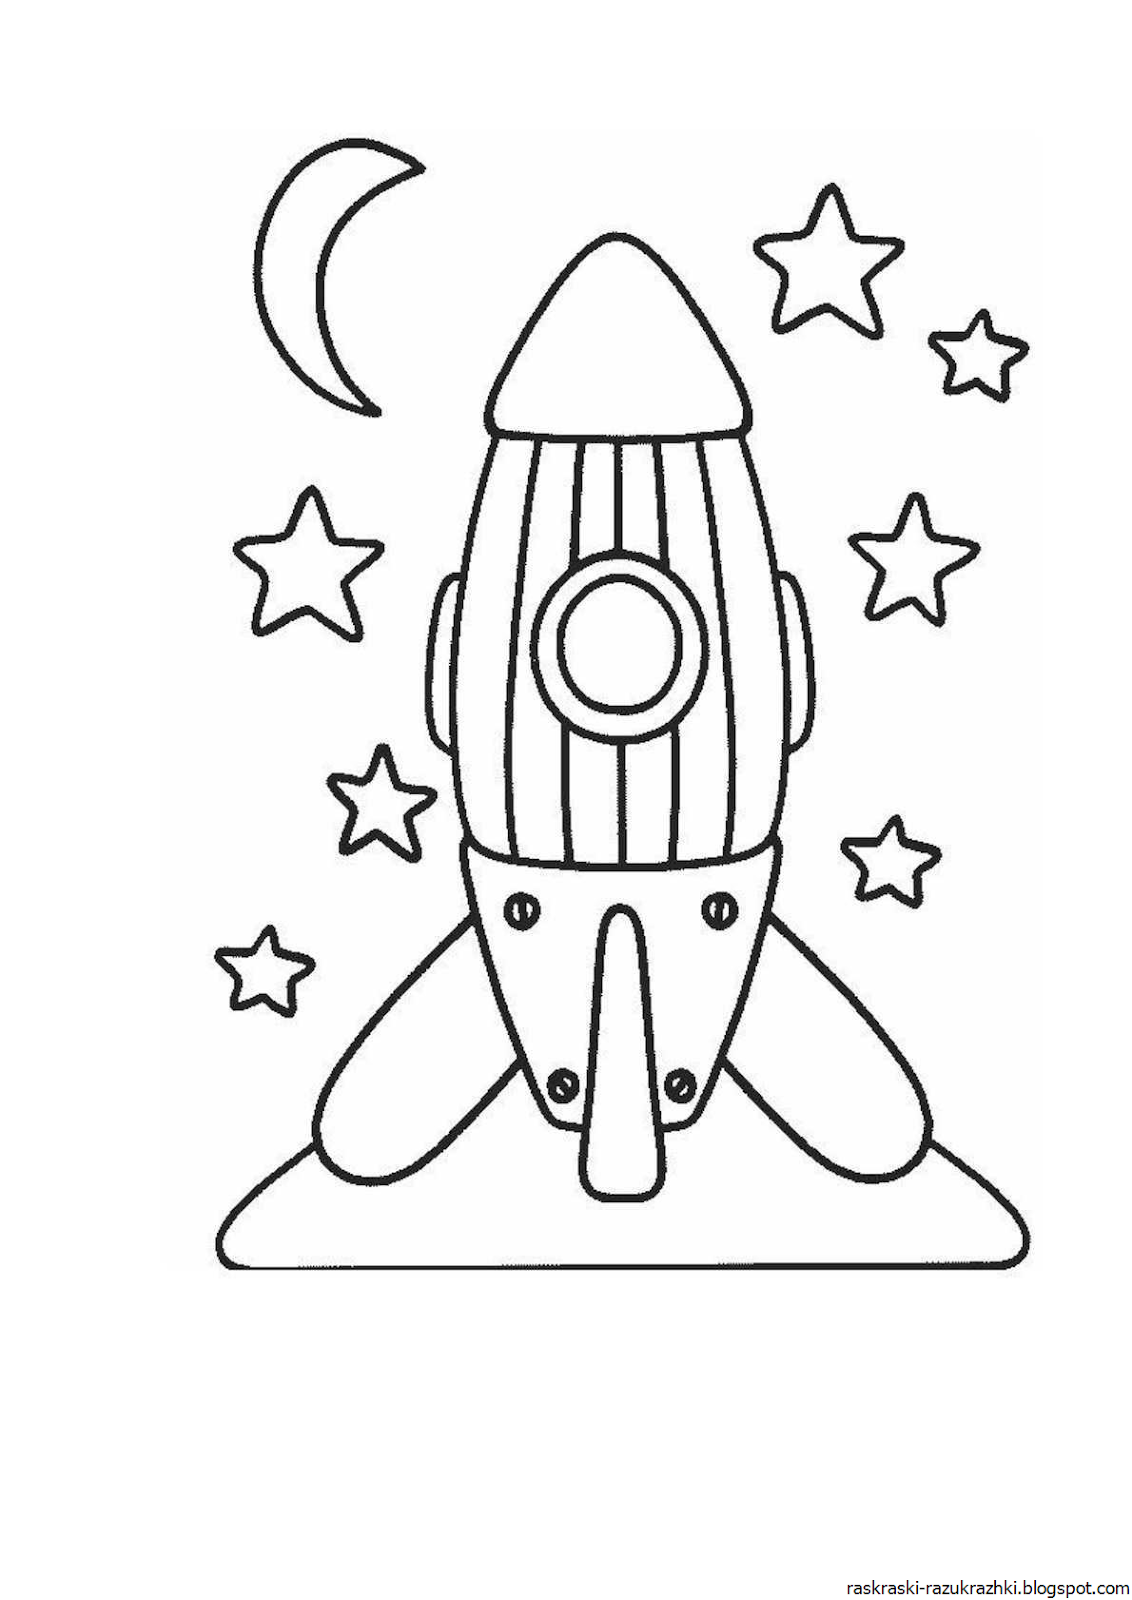 Раскраска про космос для детей 3 лет. Ракета раскраска. Ракета раскраска для детей. Космическая ракета раскраска для детей. Раскраски на тему космос.